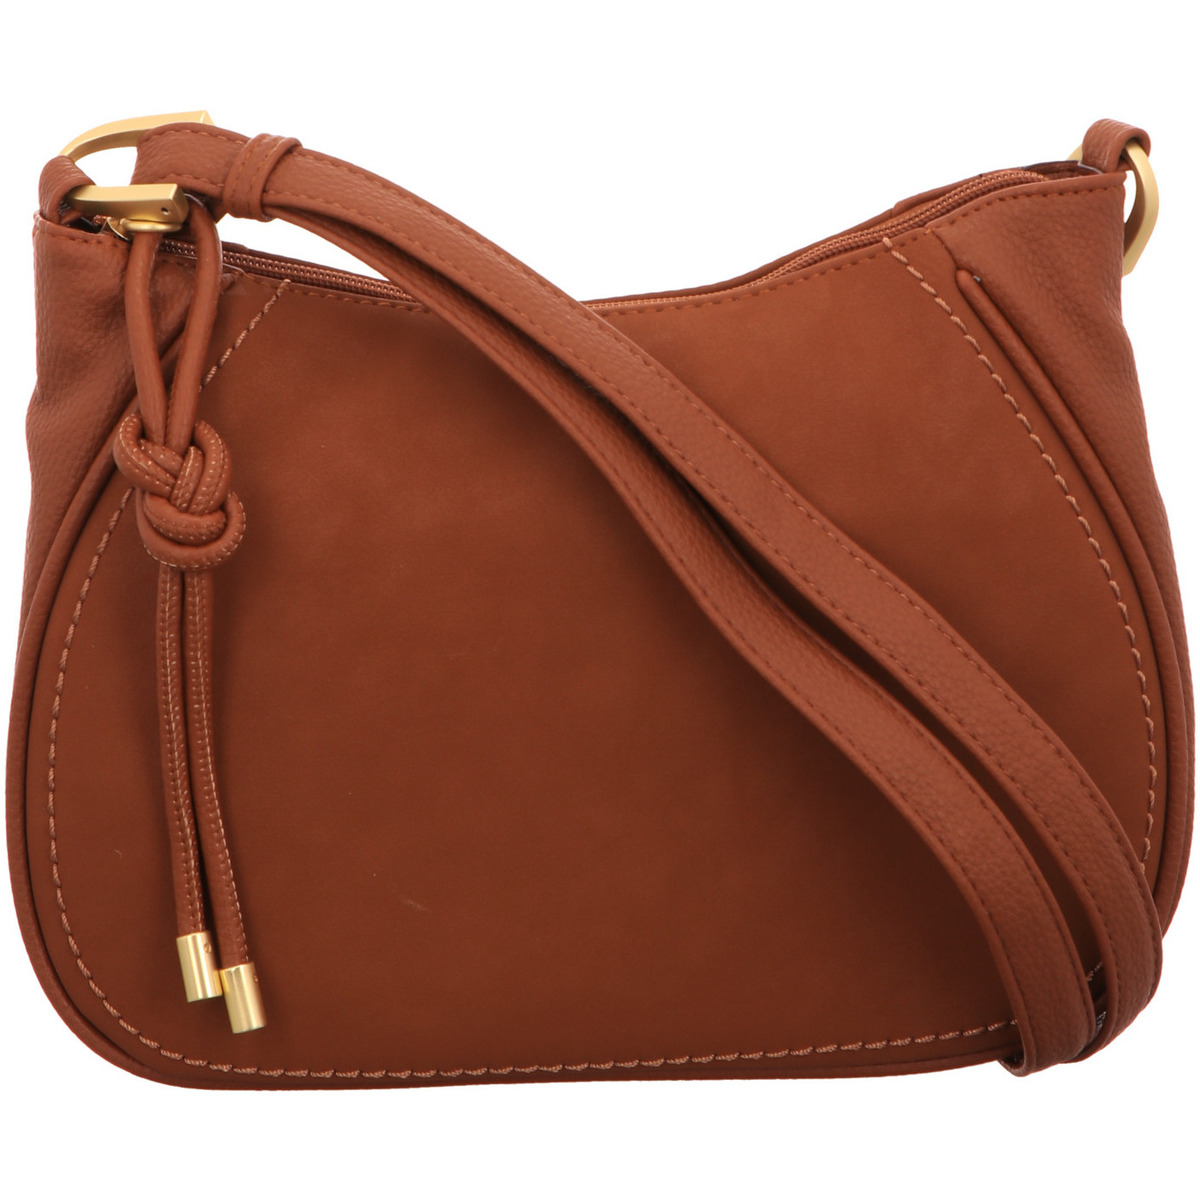 Taschen Damen Handtasche Gabor Mode Accessoires 9385-022 Braun